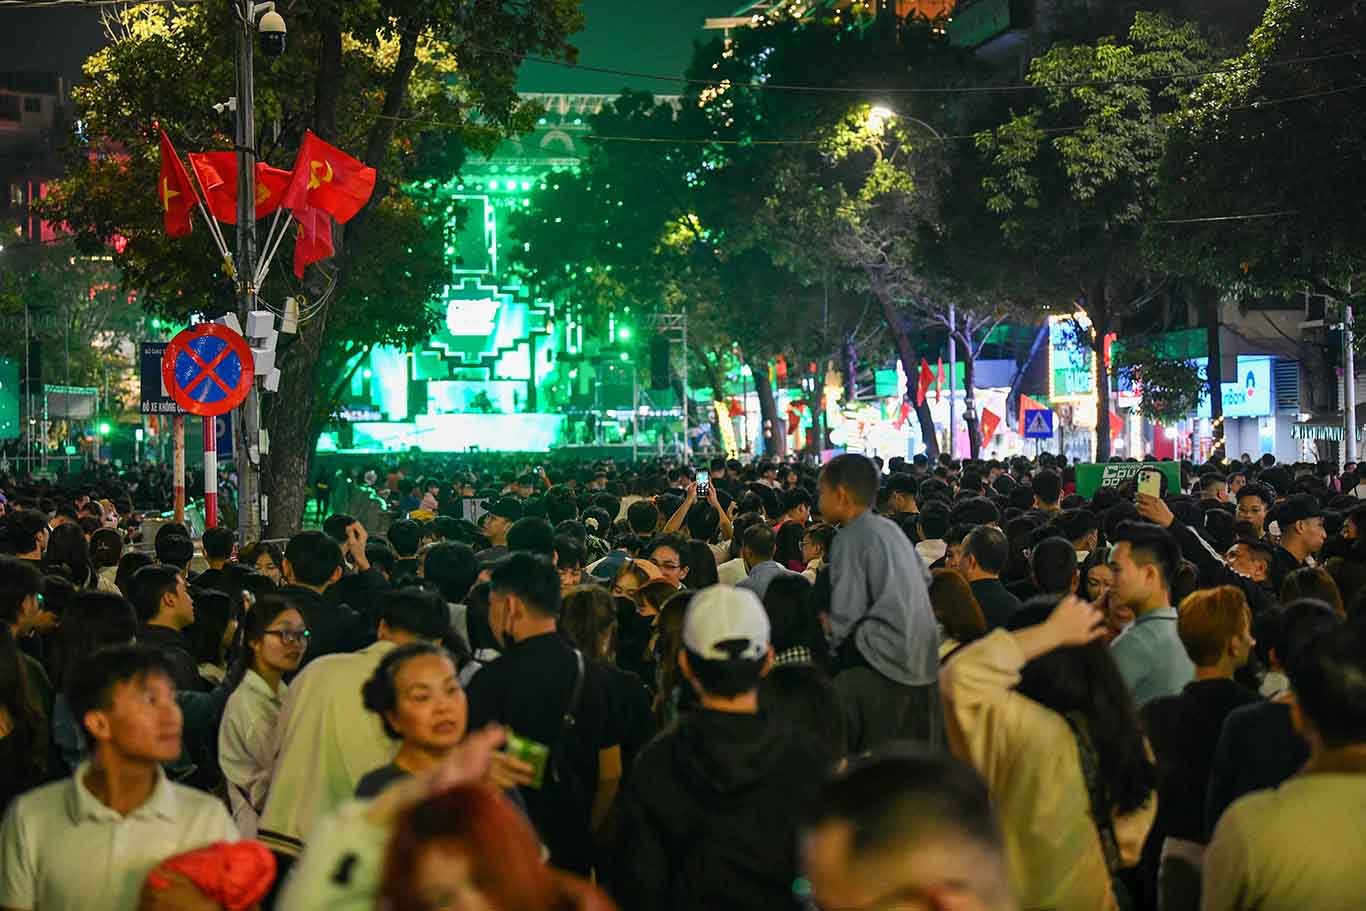 Vào 20h00, có chương trình nghệ thuật Đếm ngược - Countdown tổ chức theo hình thức xã hội hóa tại Quảng trường Đông kinh Nghĩa thục. 